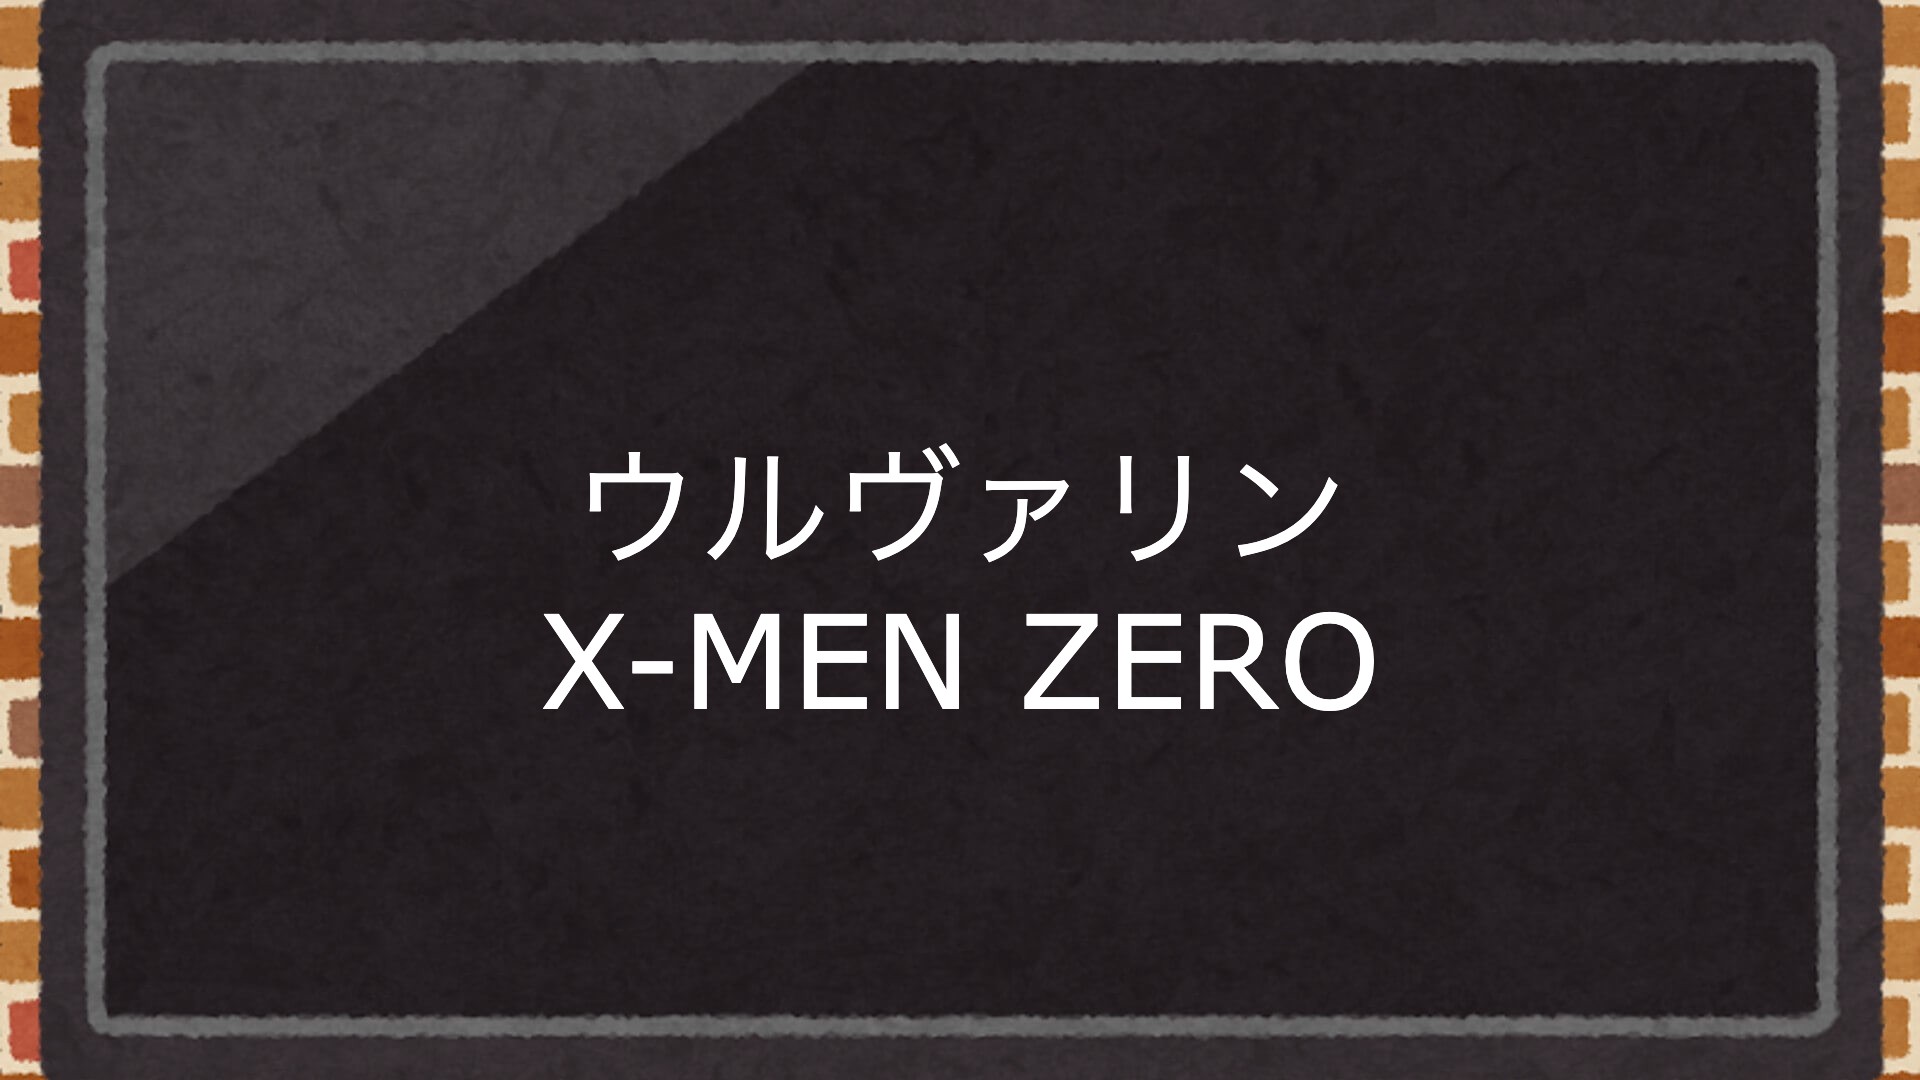 映画『ウルヴァリン X-MEN ZERO』を全編無料で視聴できる動画配信サービスまとめ